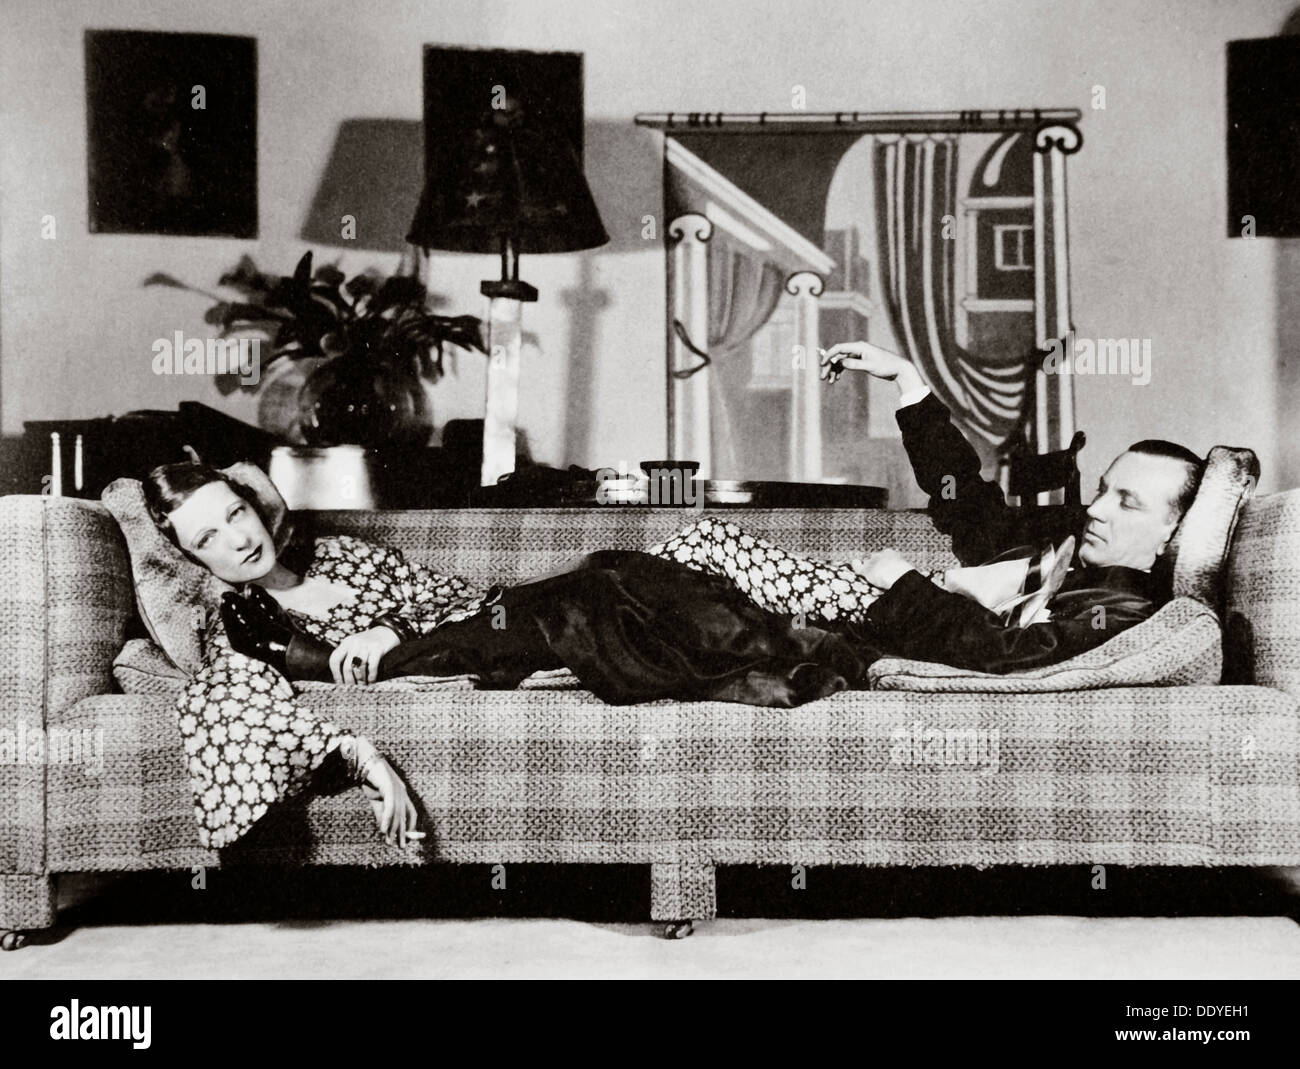 Noel Coward und Gertrude Lawrence in einer Szene aus "Private Lives", New York, USA, 1931. Künstler: unbekannt Stockfoto